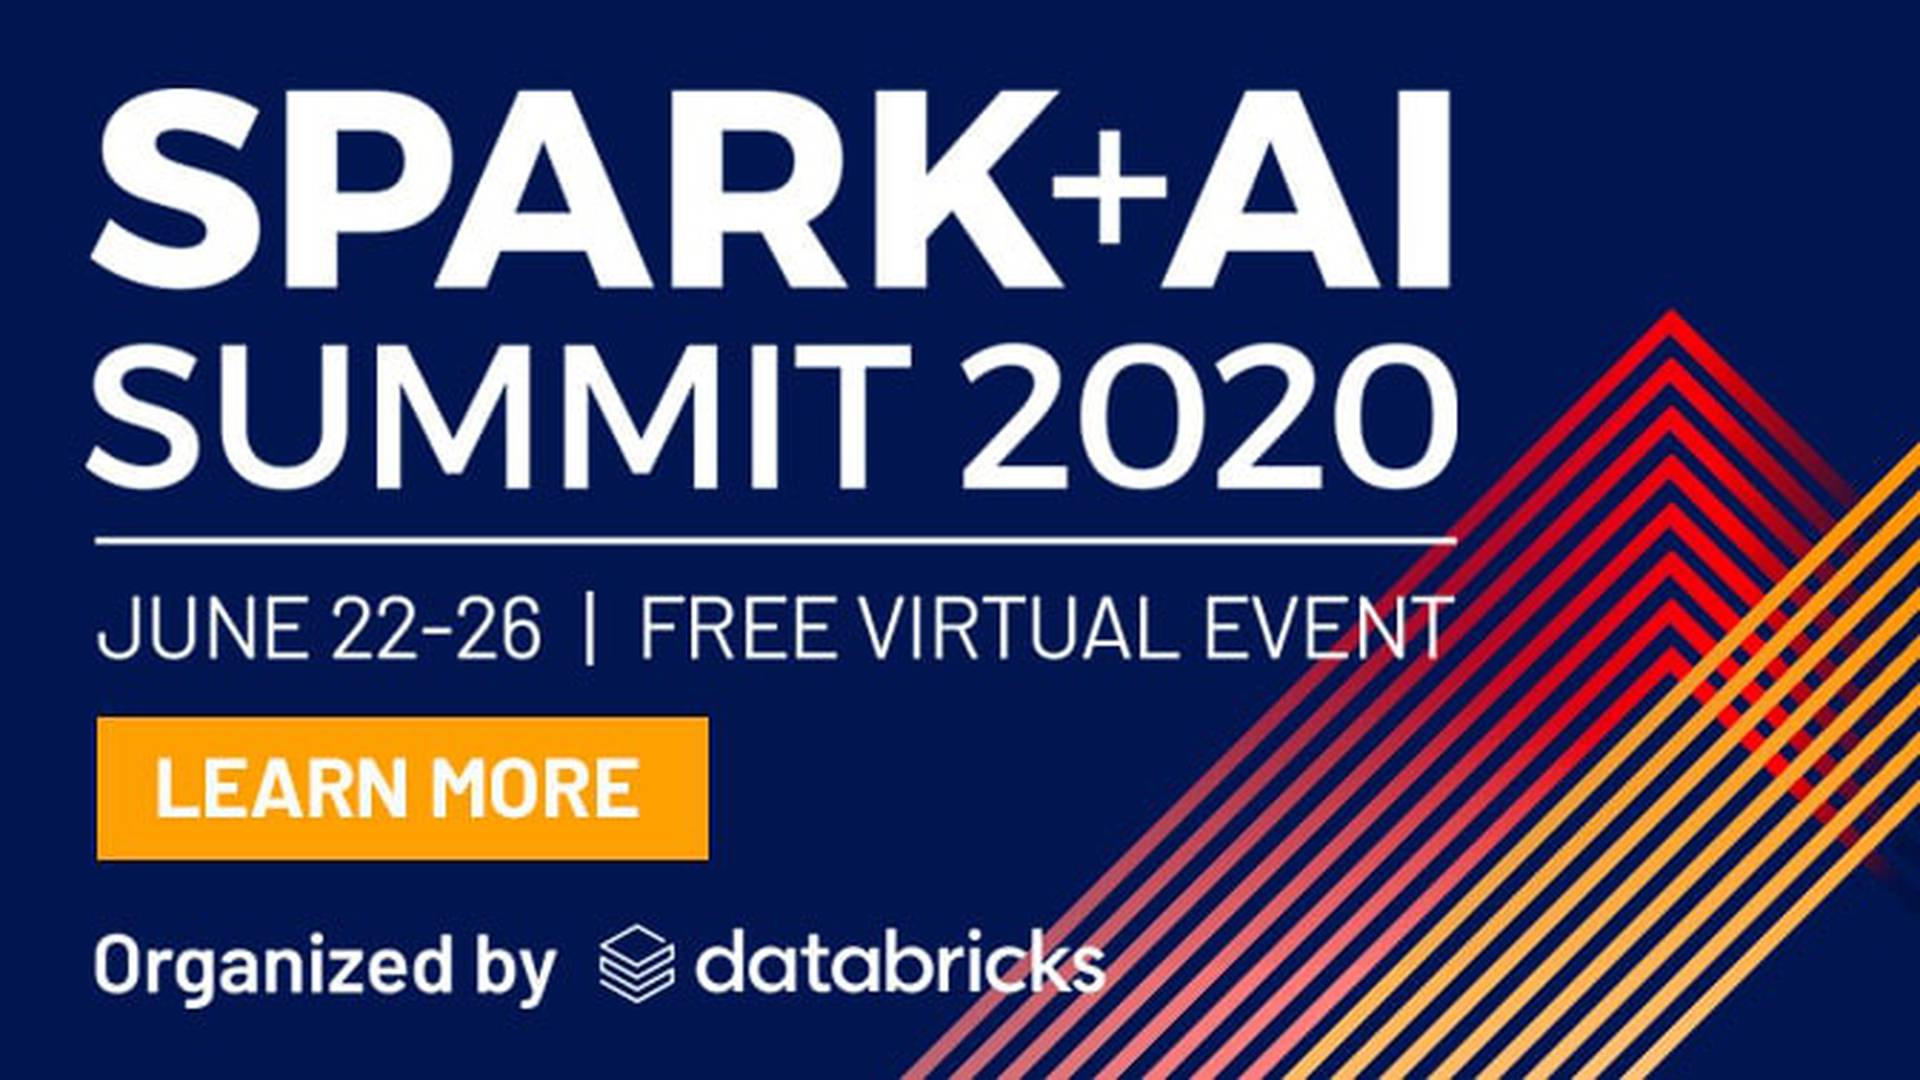 Spark + AI Summit 2020 AI & ML Events